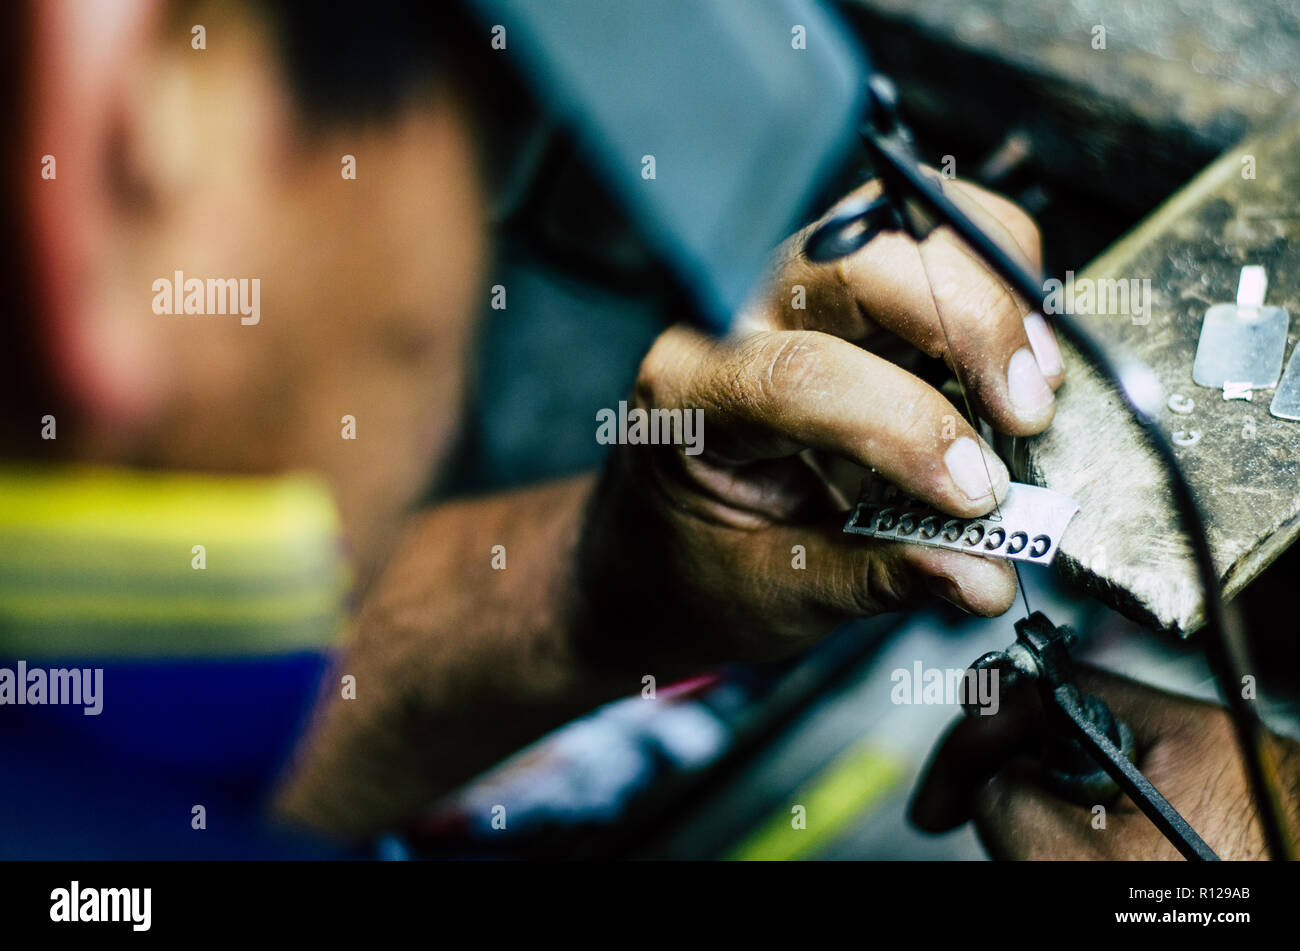 Hände Goldschmiedearbeiten des Menschen auf ein Stück Silber mit einer Metallsäge auf dem Arbeitstisch, Nahaufnahme, ausgewählte konzentrieren, enge Tiefenschärfe Stockfoto